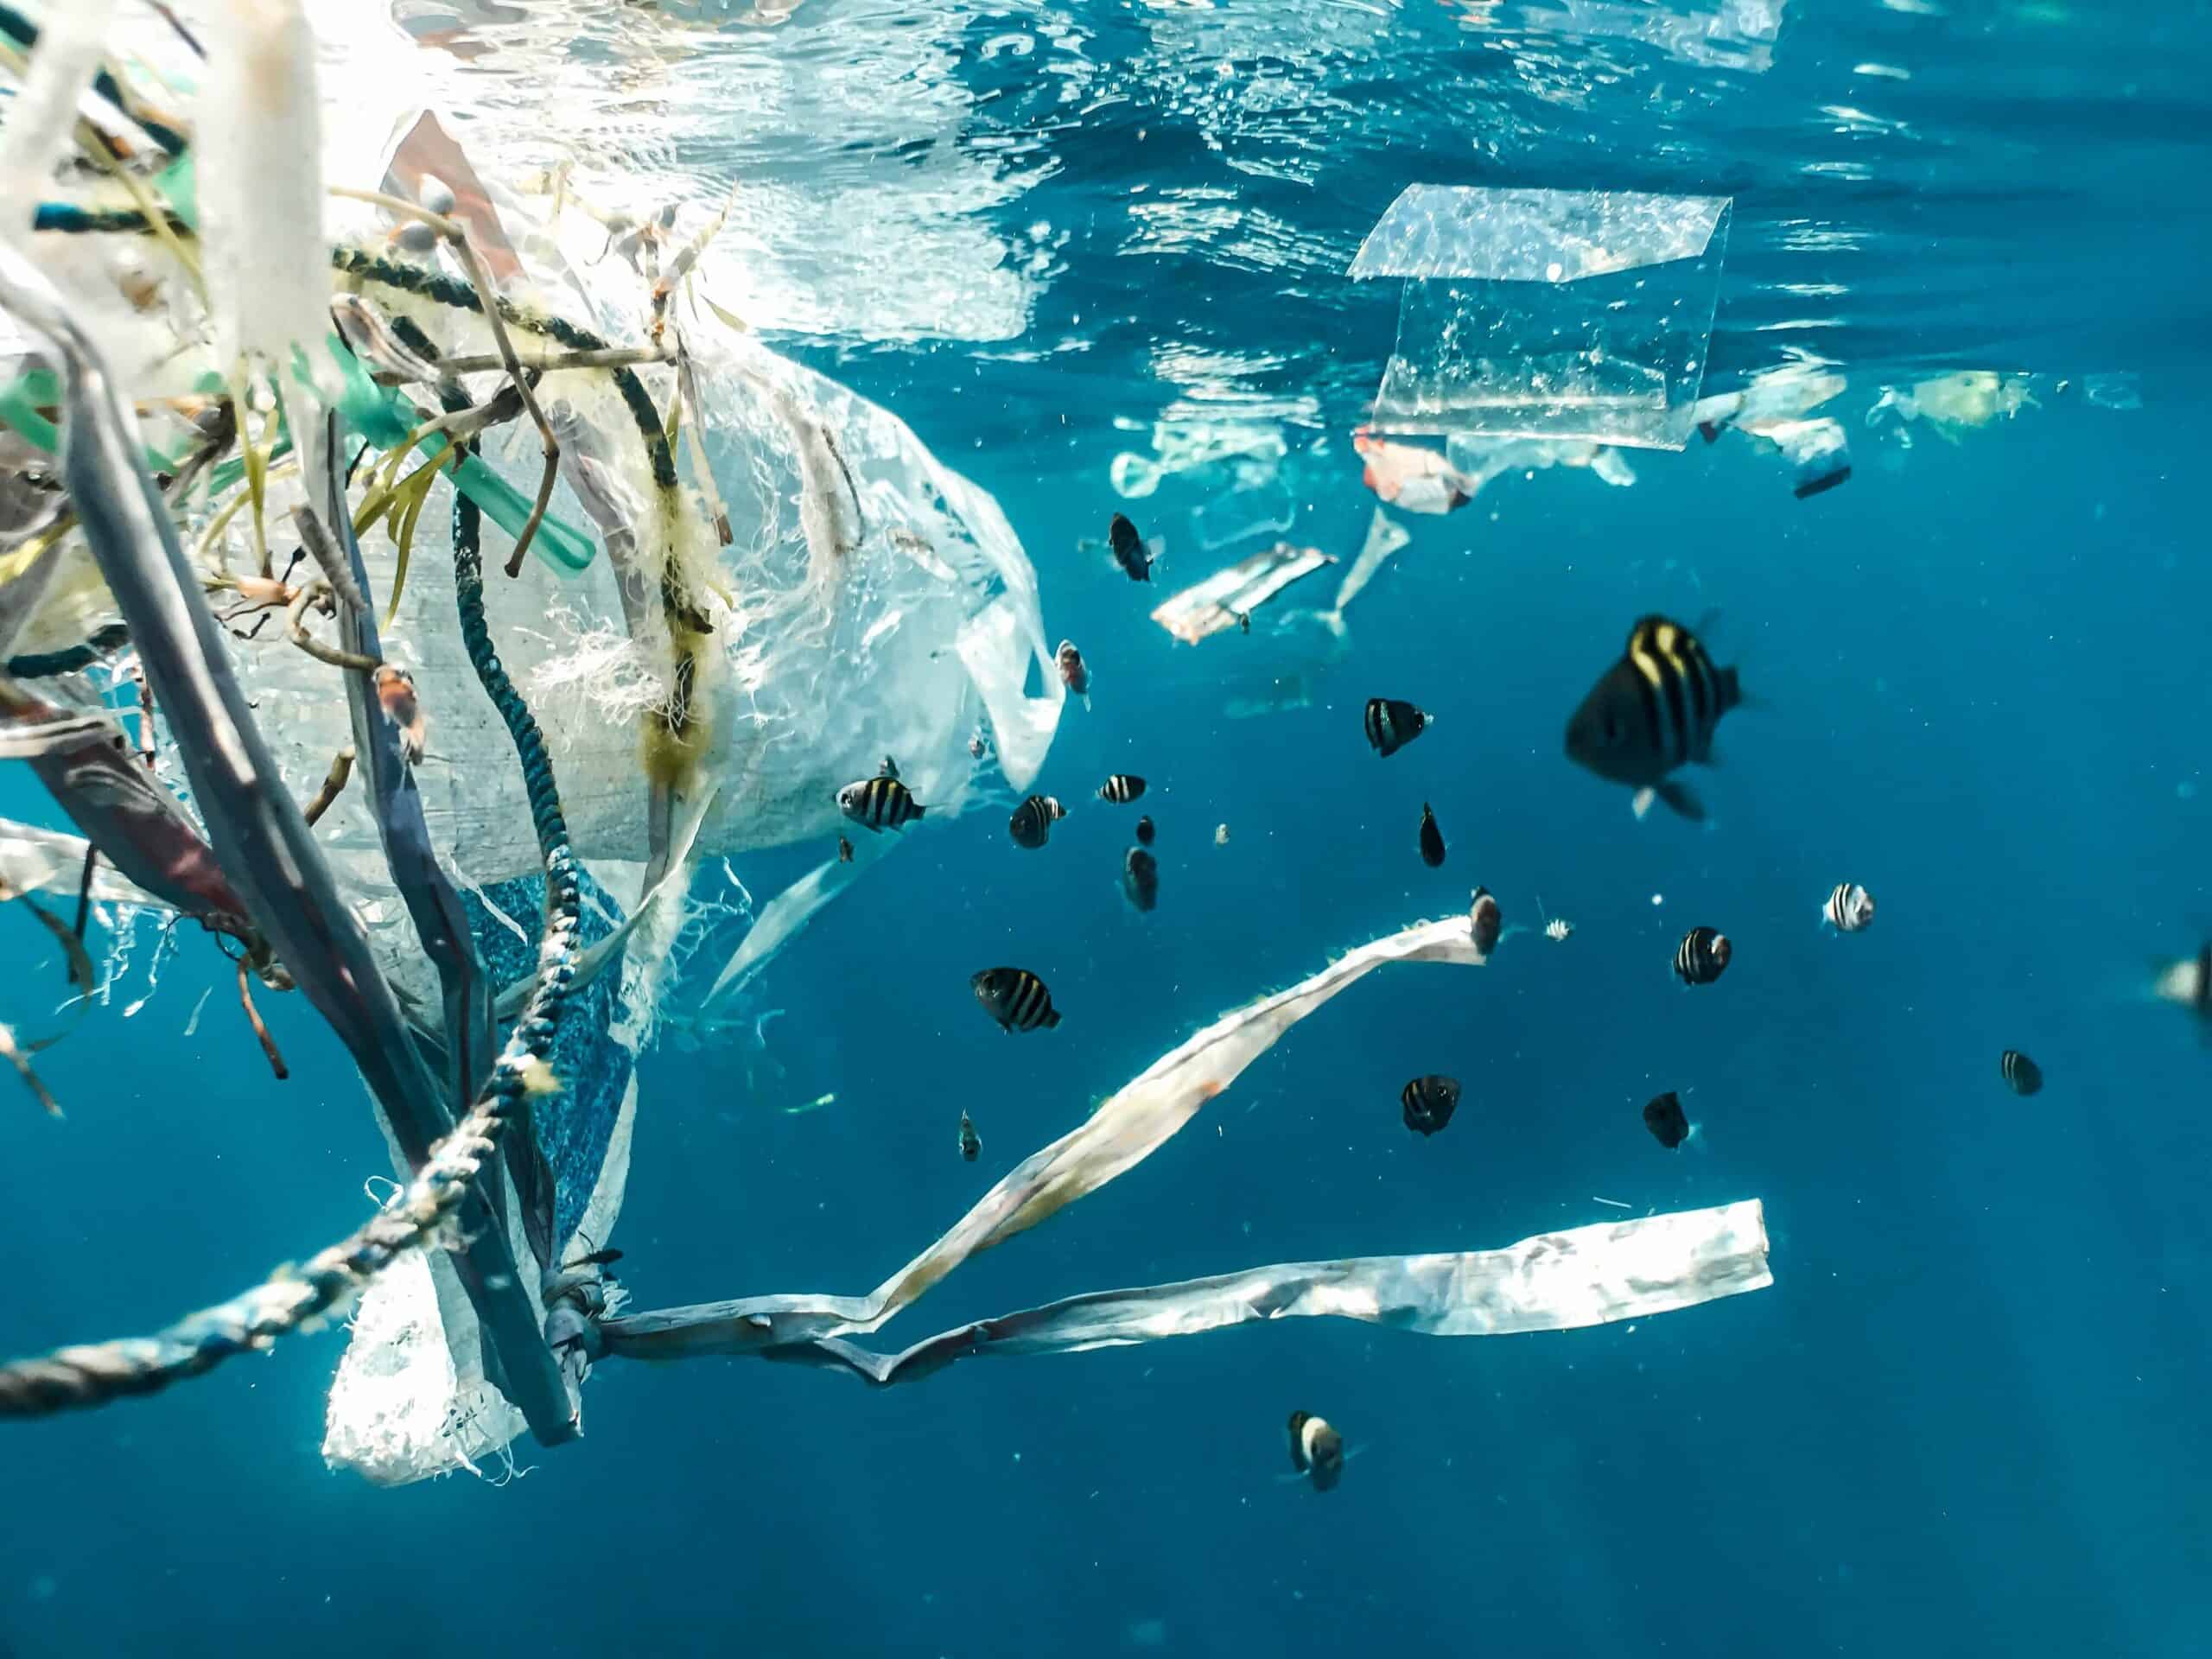 Plastics Killing Sea Turtles